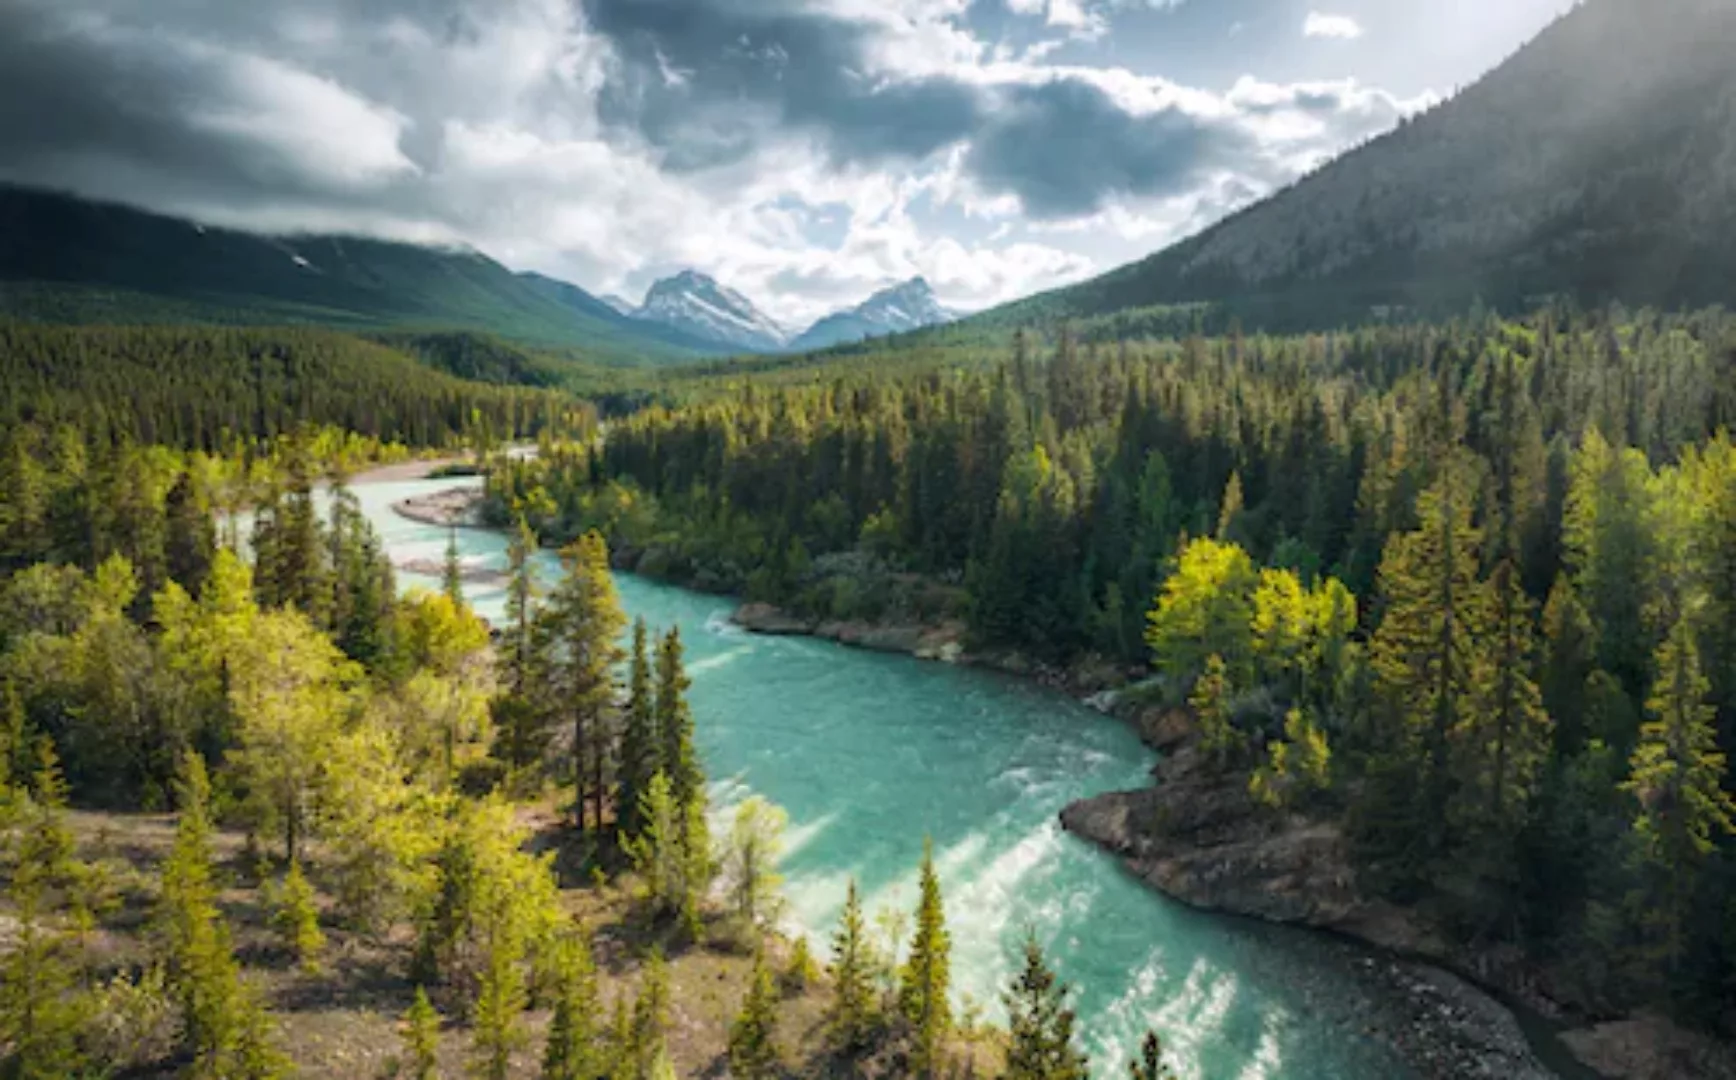 KOMAR Vlies Fototapete - Wild Canada - Größe 450 x 280 cm mehrfarbig günstig online kaufen